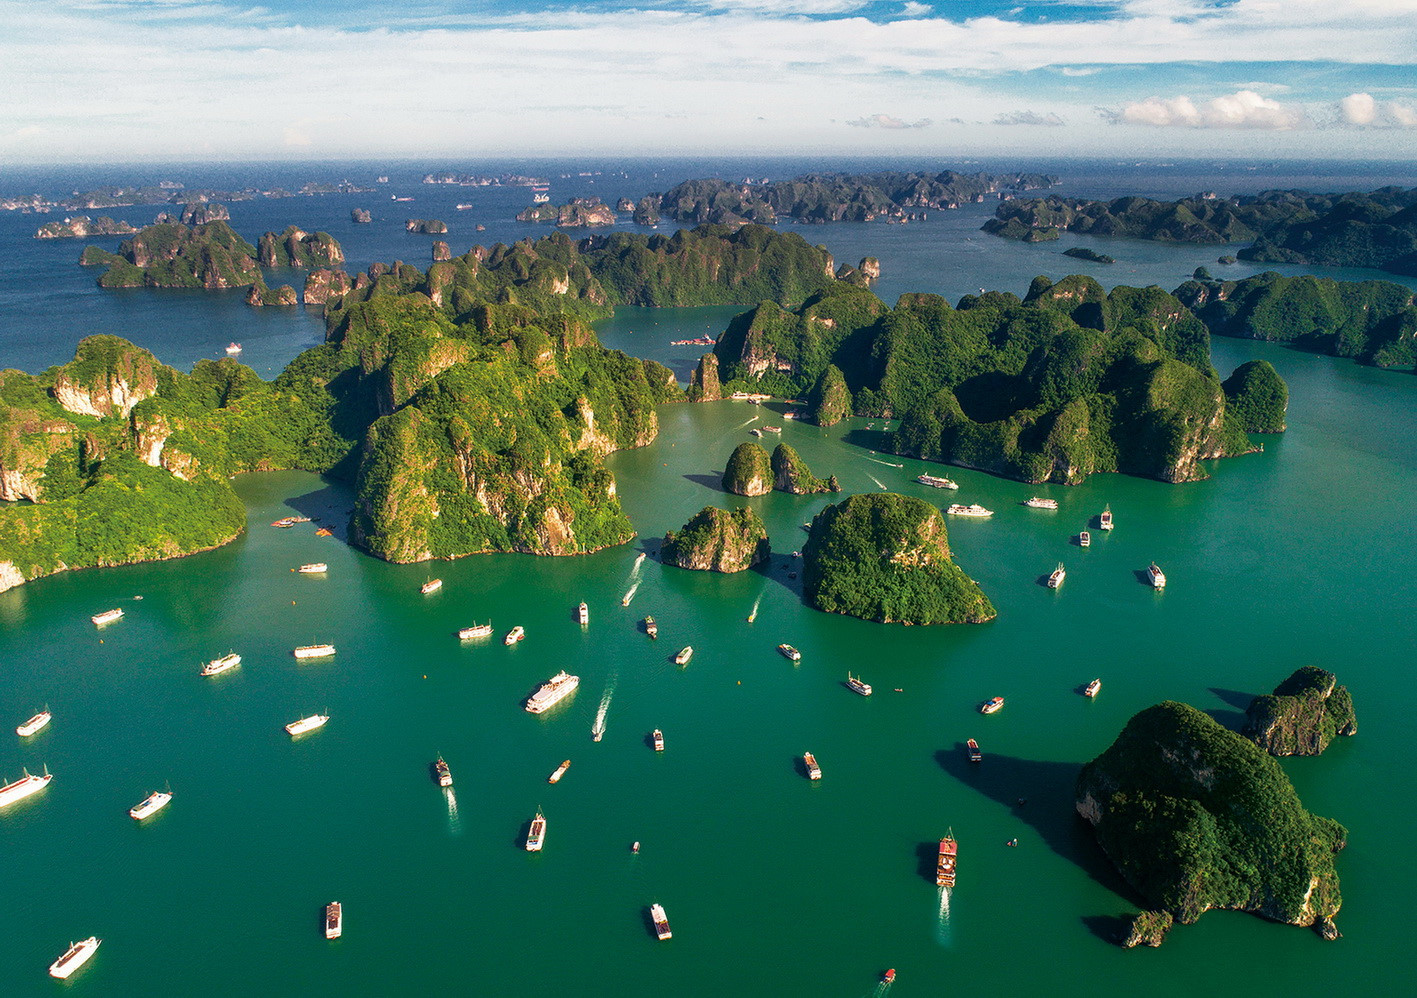 Ngắm những hình ảnh tuyệt đẹp về thiên nhiên Việt Nam trên báo Anh